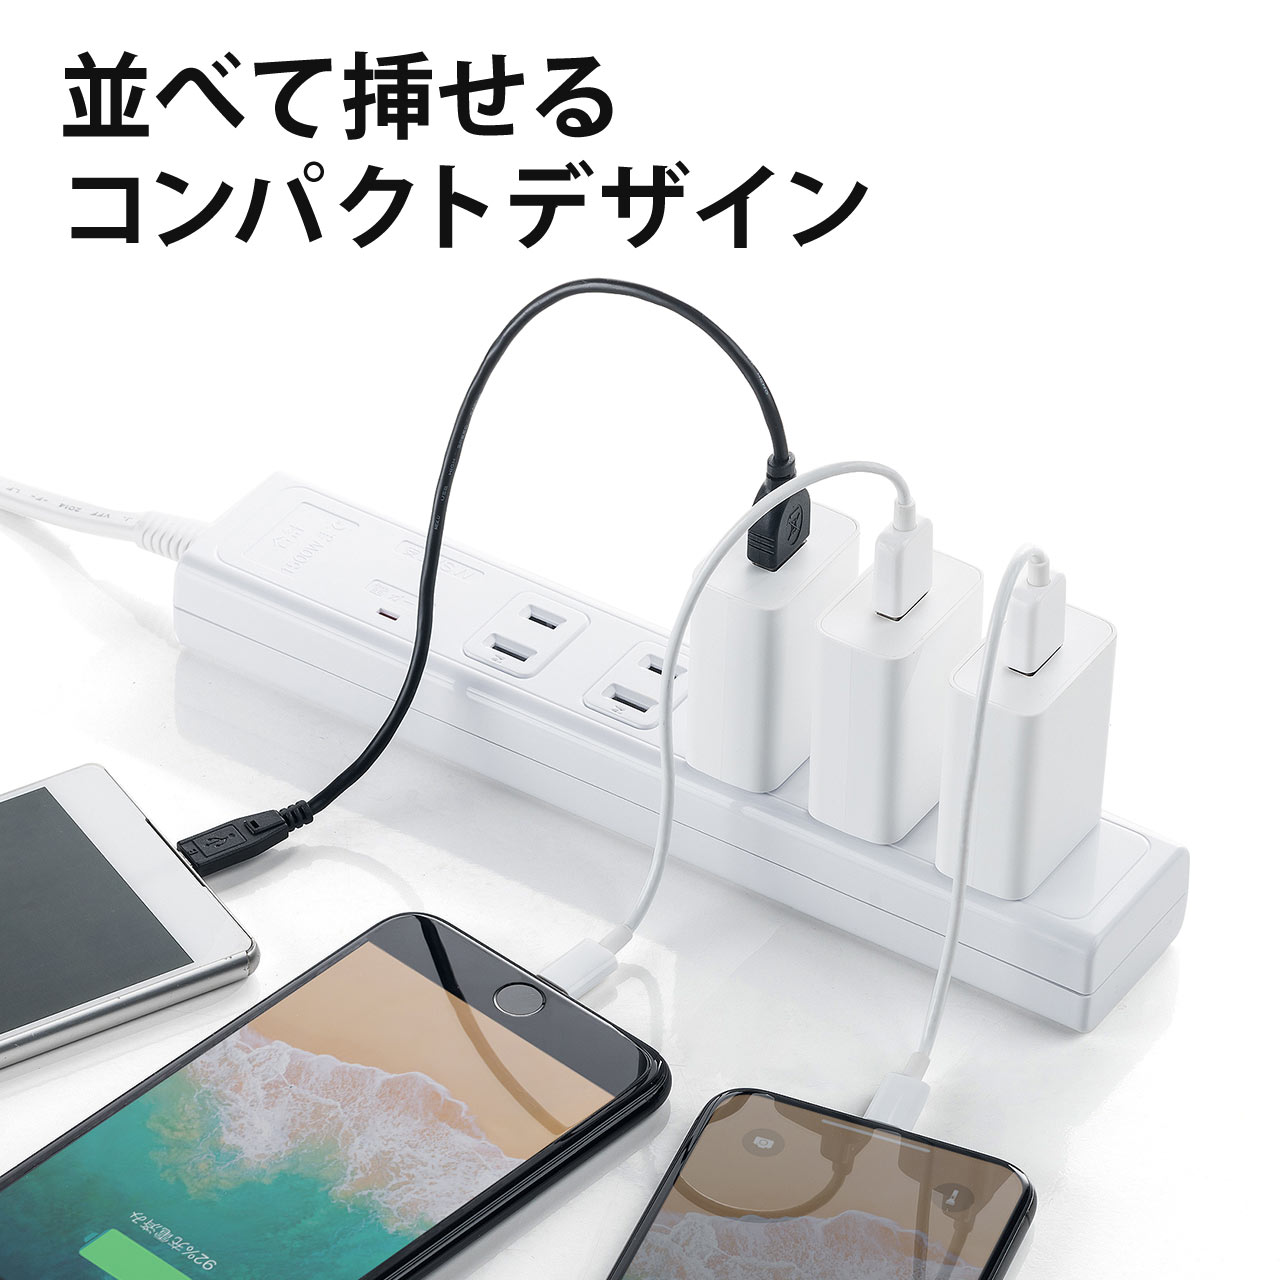 【10個セット】USB充電器 1ポート 2A コンパクト PSE取得 iPhone Xperia充電対応 ブラック コンパクト 小型 絶縁キャップ　2A 702-AC021-10BK